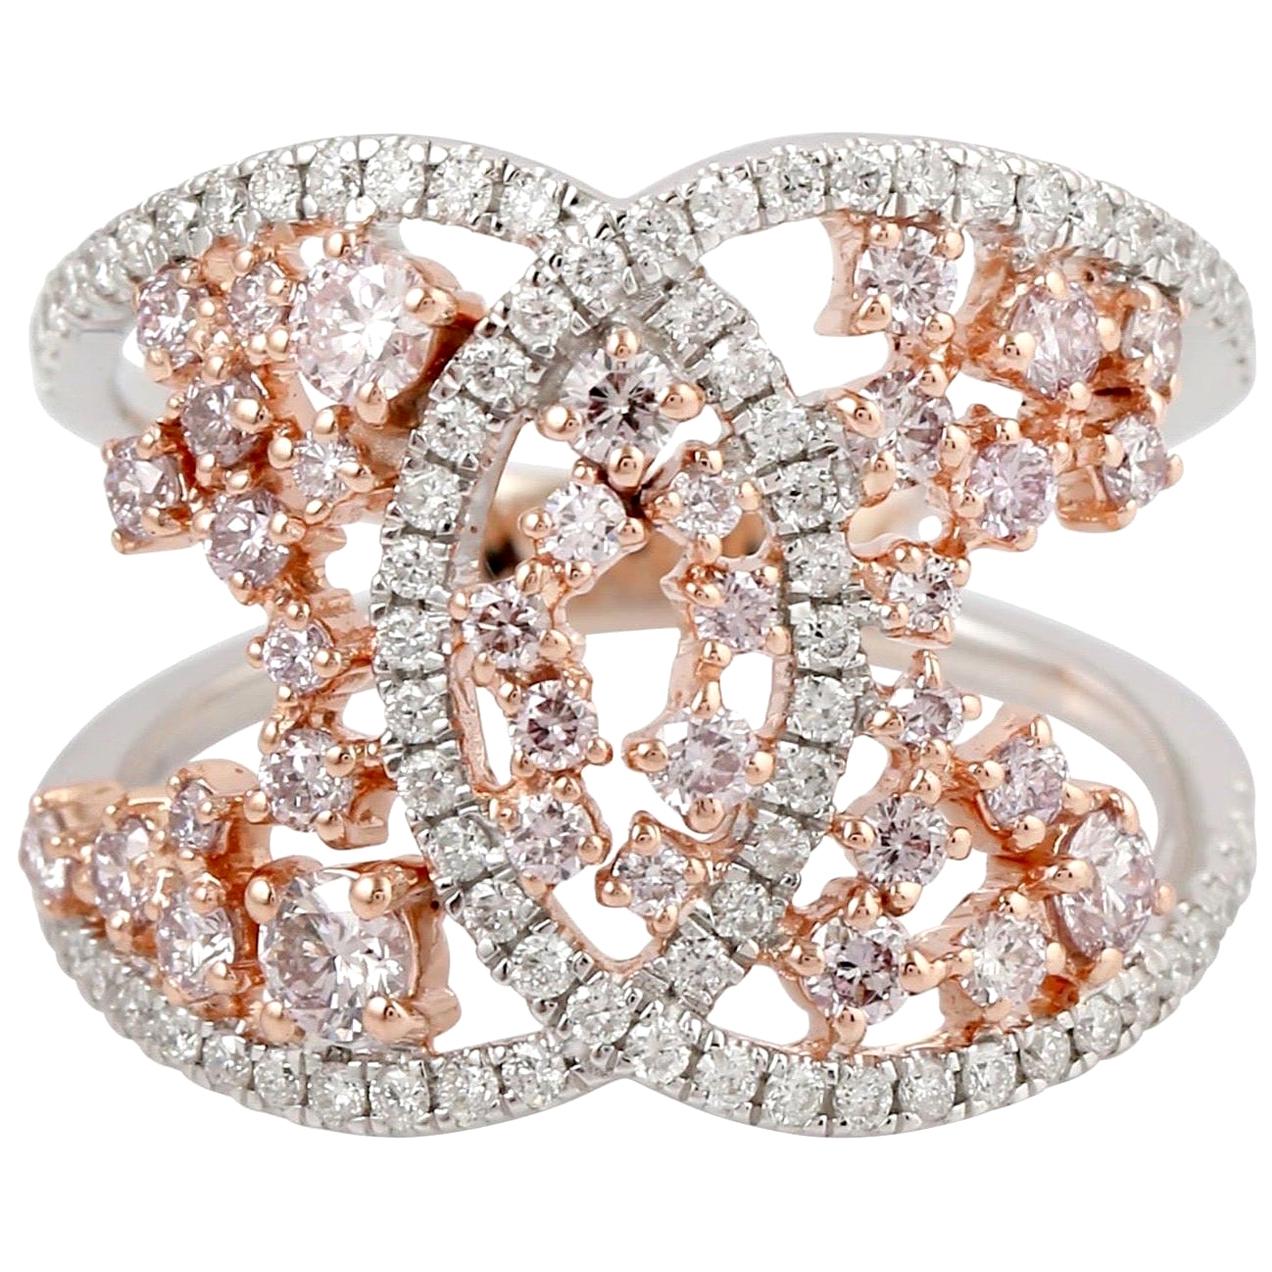 18 Karat Gold Engagement Diamond Ring